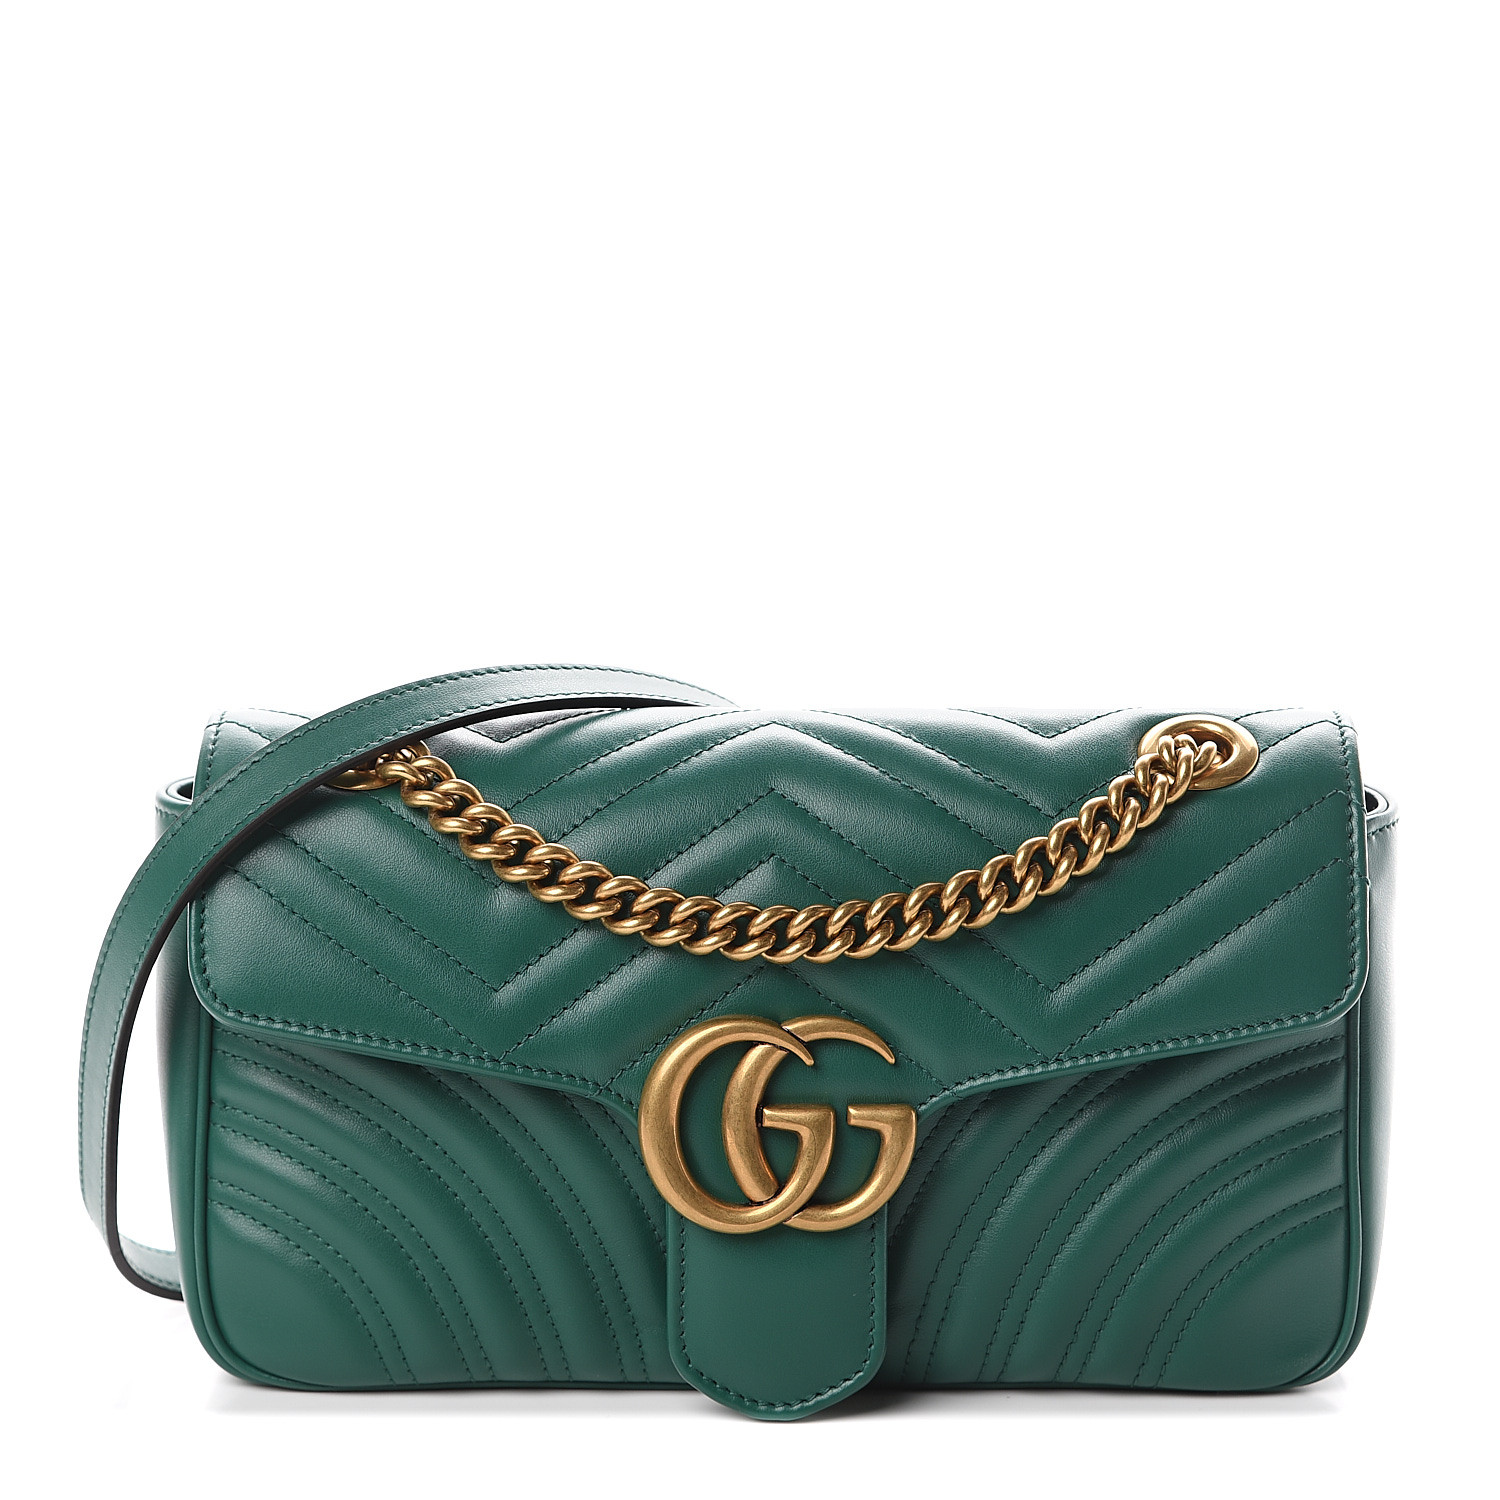 emerald gucci bag